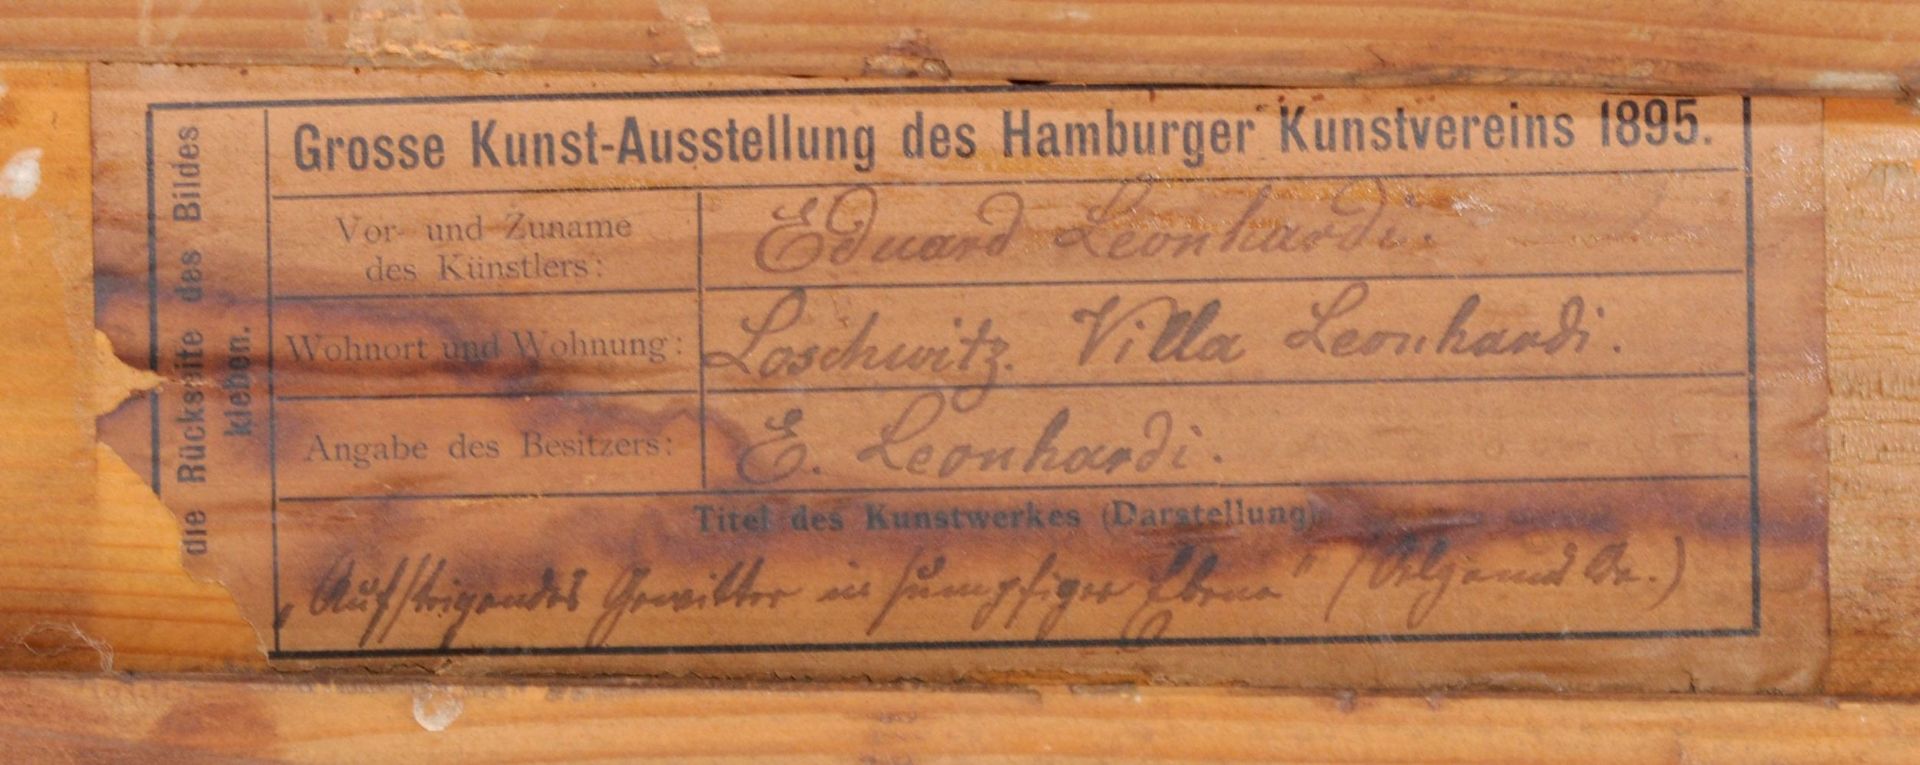 Eduard Emil August Leonhardi "Aufsteigendes Gewitter in sumpfiger Ebene". 1894. - Bild 3 aus 5